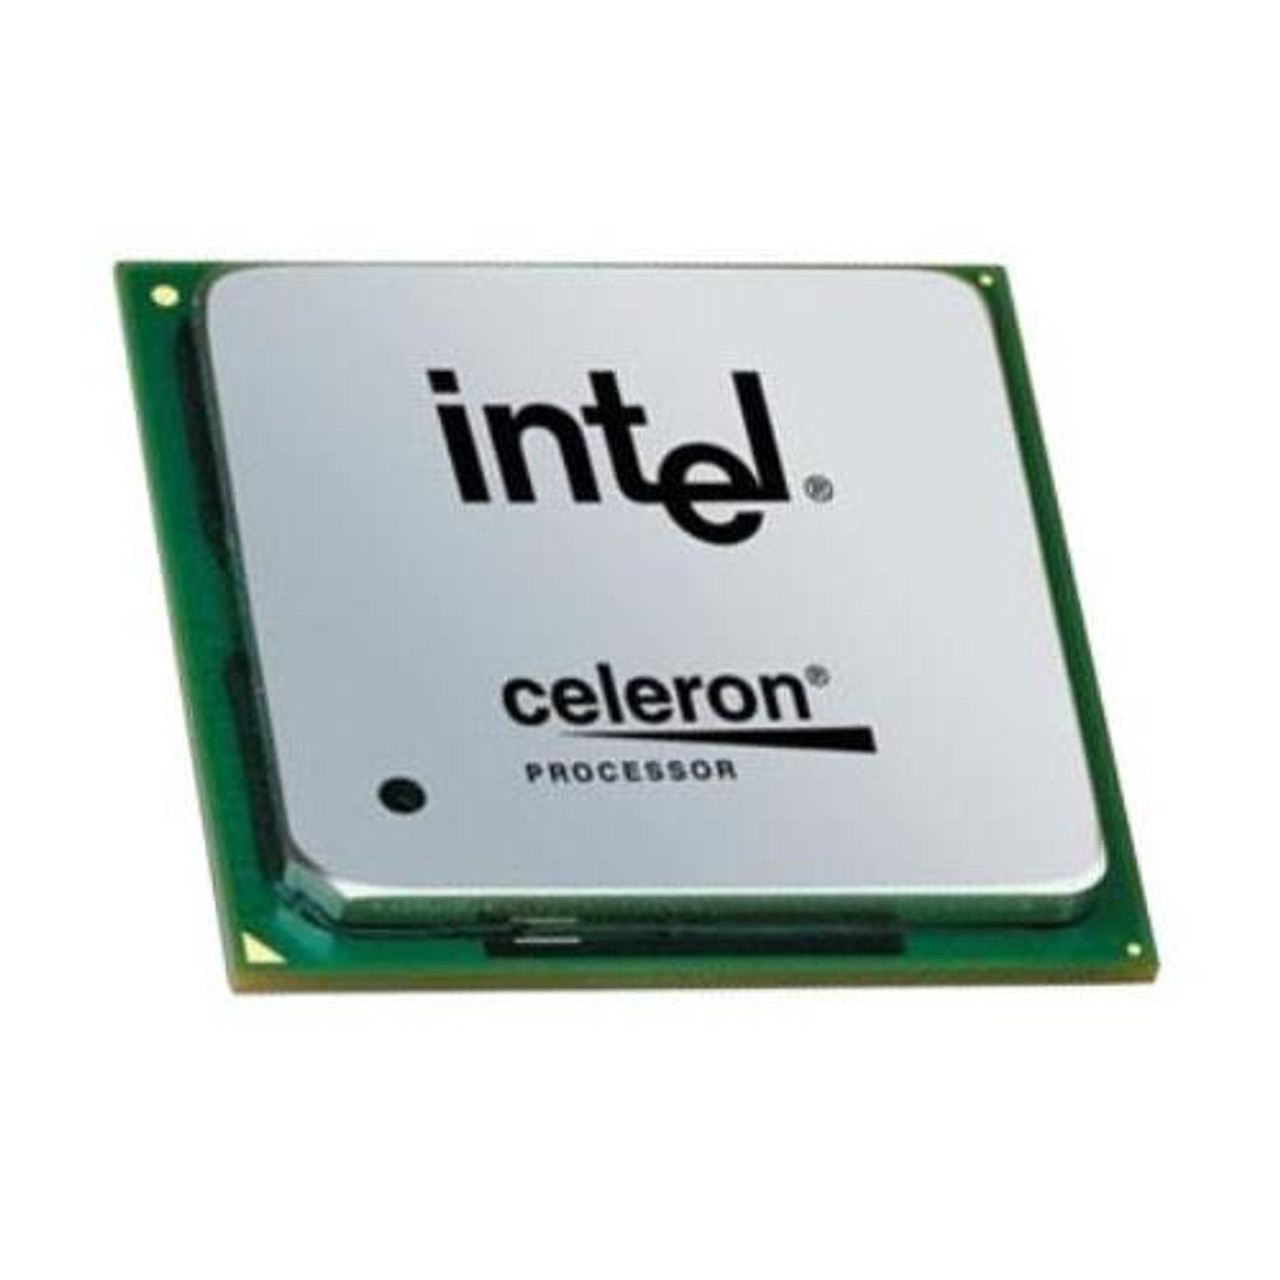 vijver Maand Bijdragen HH80557PG056D Intel Celeron 2.40 GHz Processor Unboxed OEM